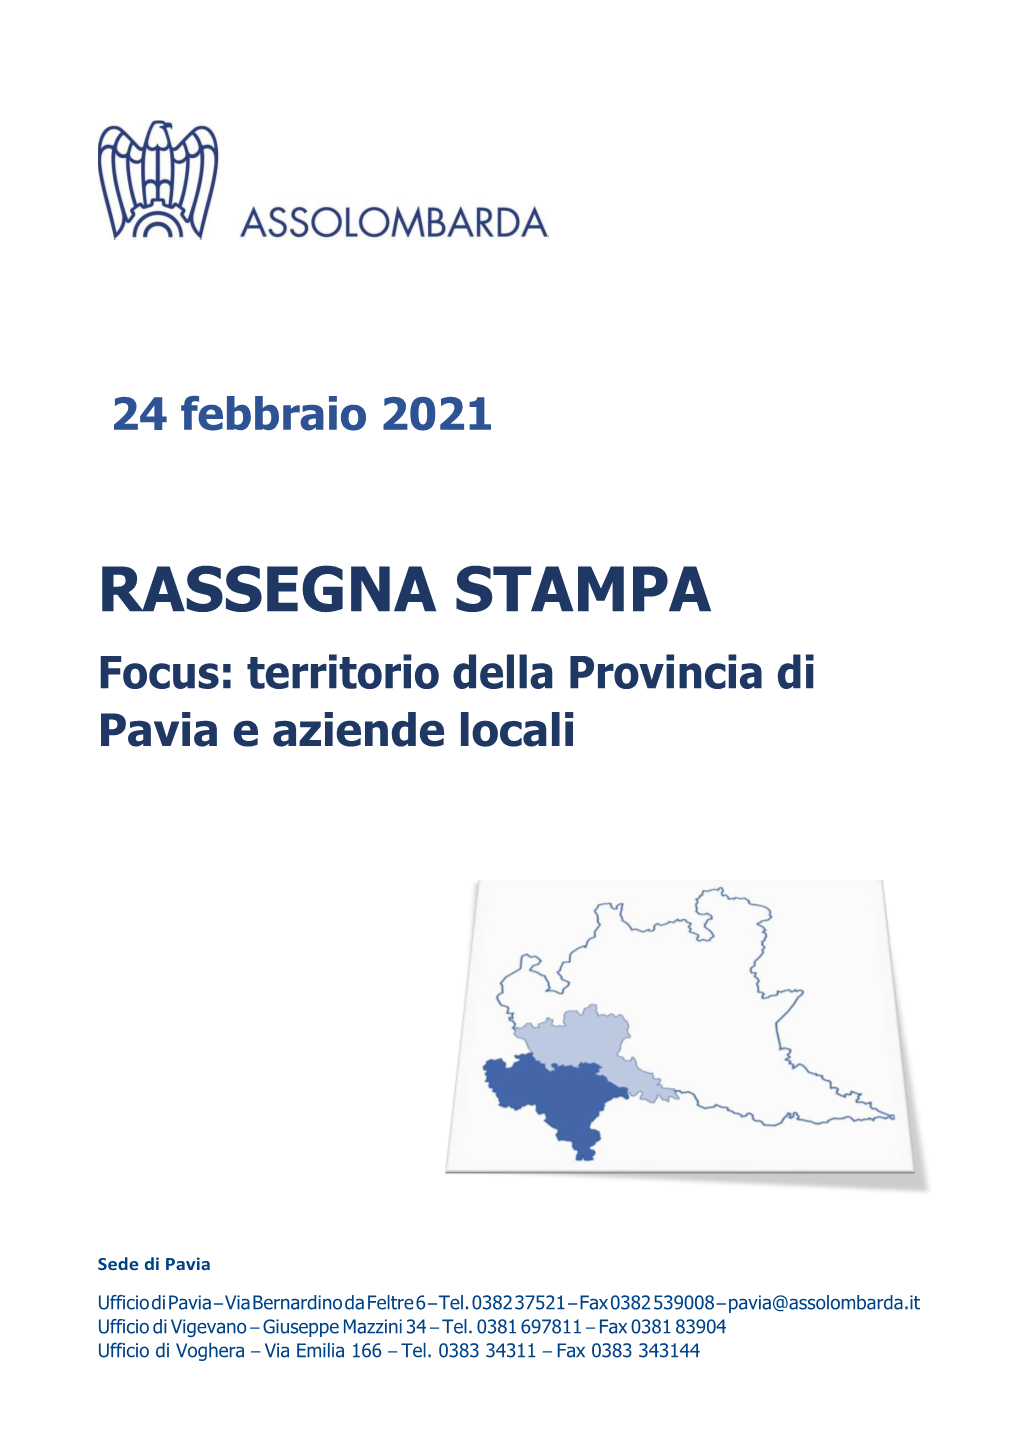 RASSEGNA STAMPA Focus: Territorio Della Provincia Di Pavia E Aziende Locali